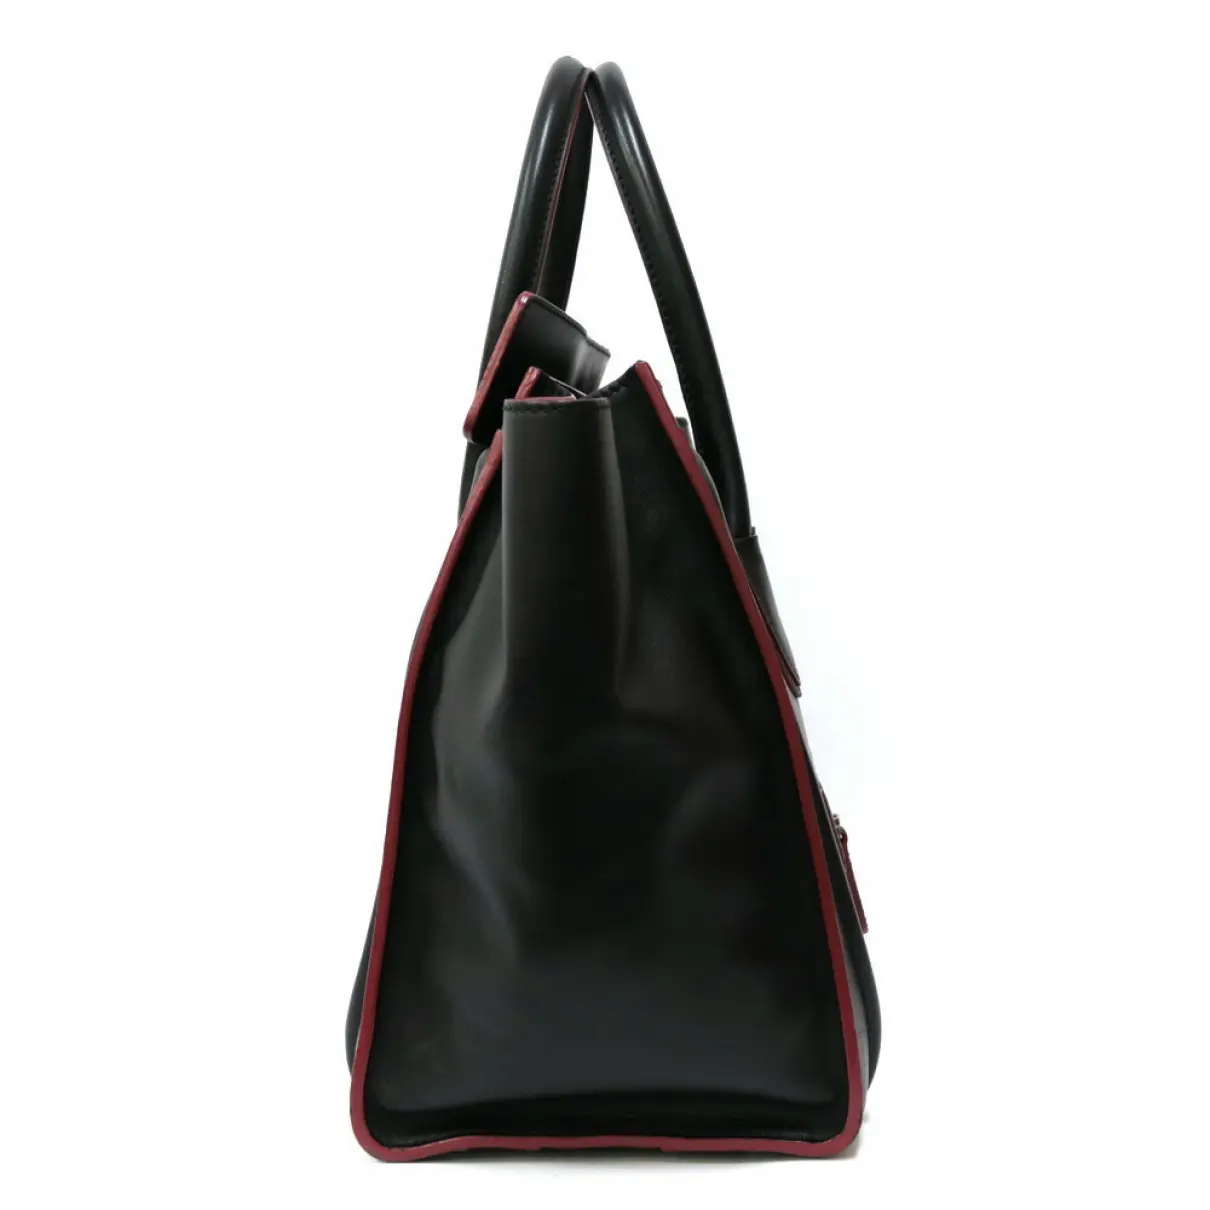 Luggage mini leather bag Celine